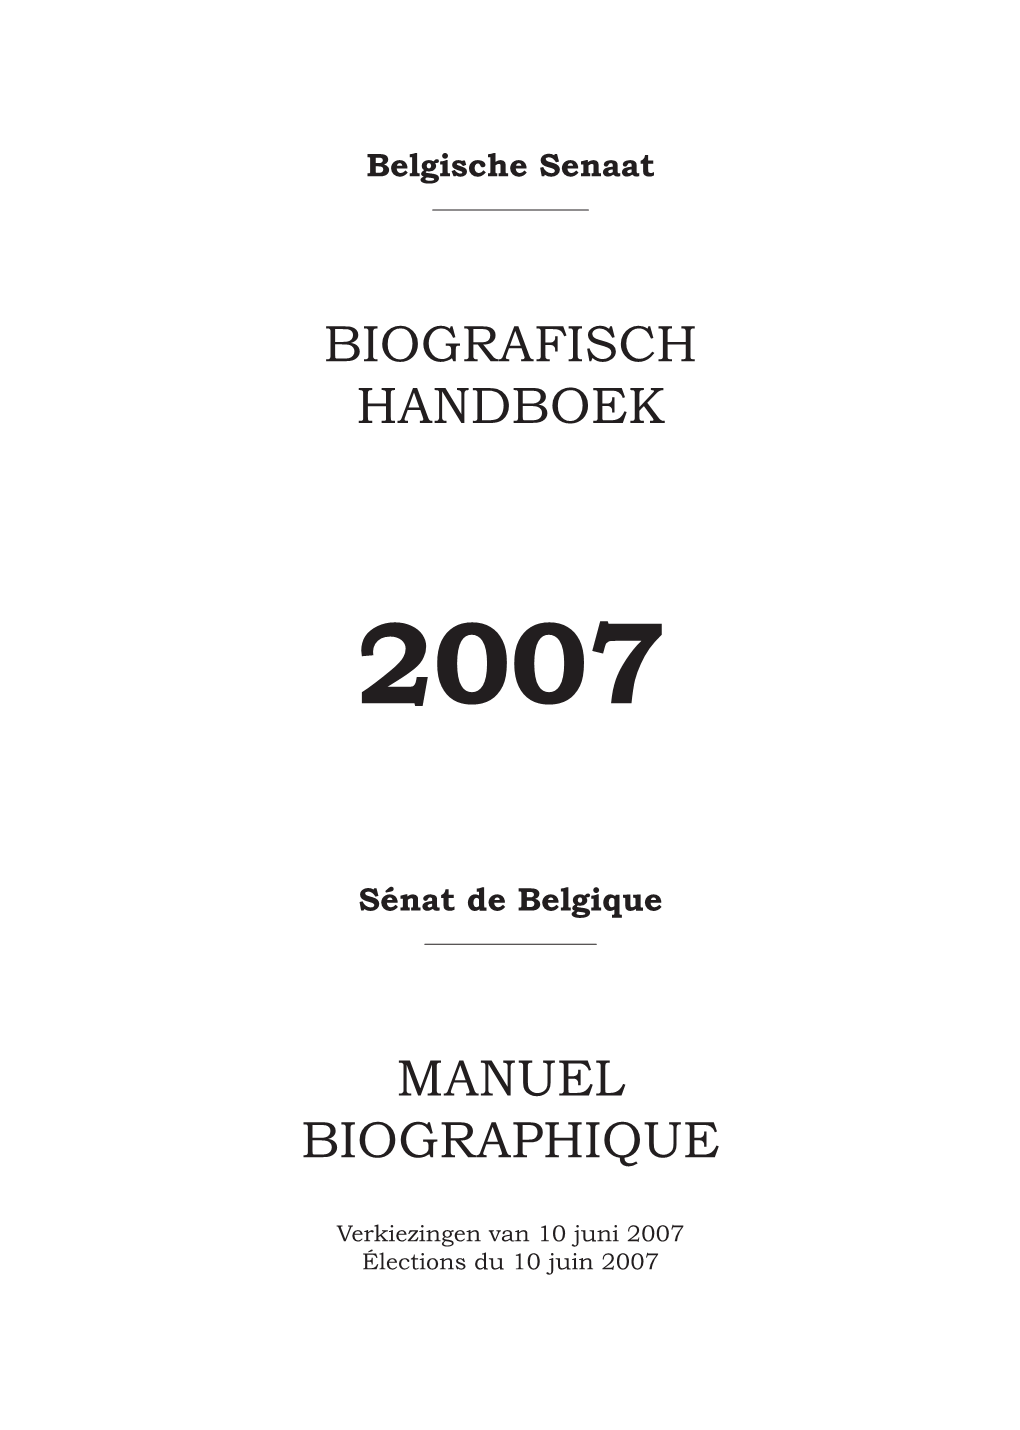 Biografisch Handboek